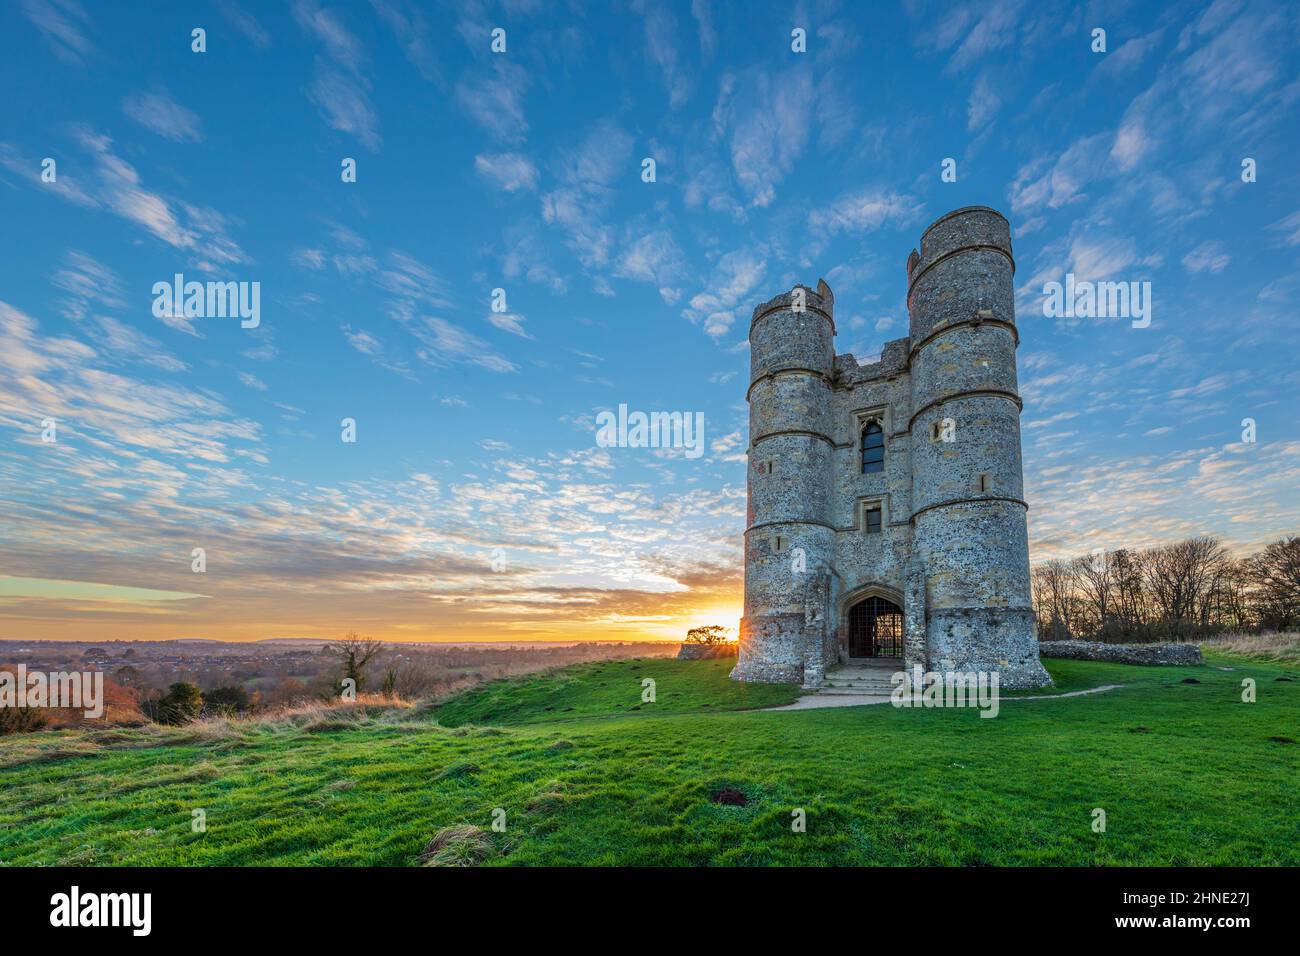 Ruins of Donnington Castle at sunset, Newbury, Berkshire, England, United Kingdom, Europe Stock Photo